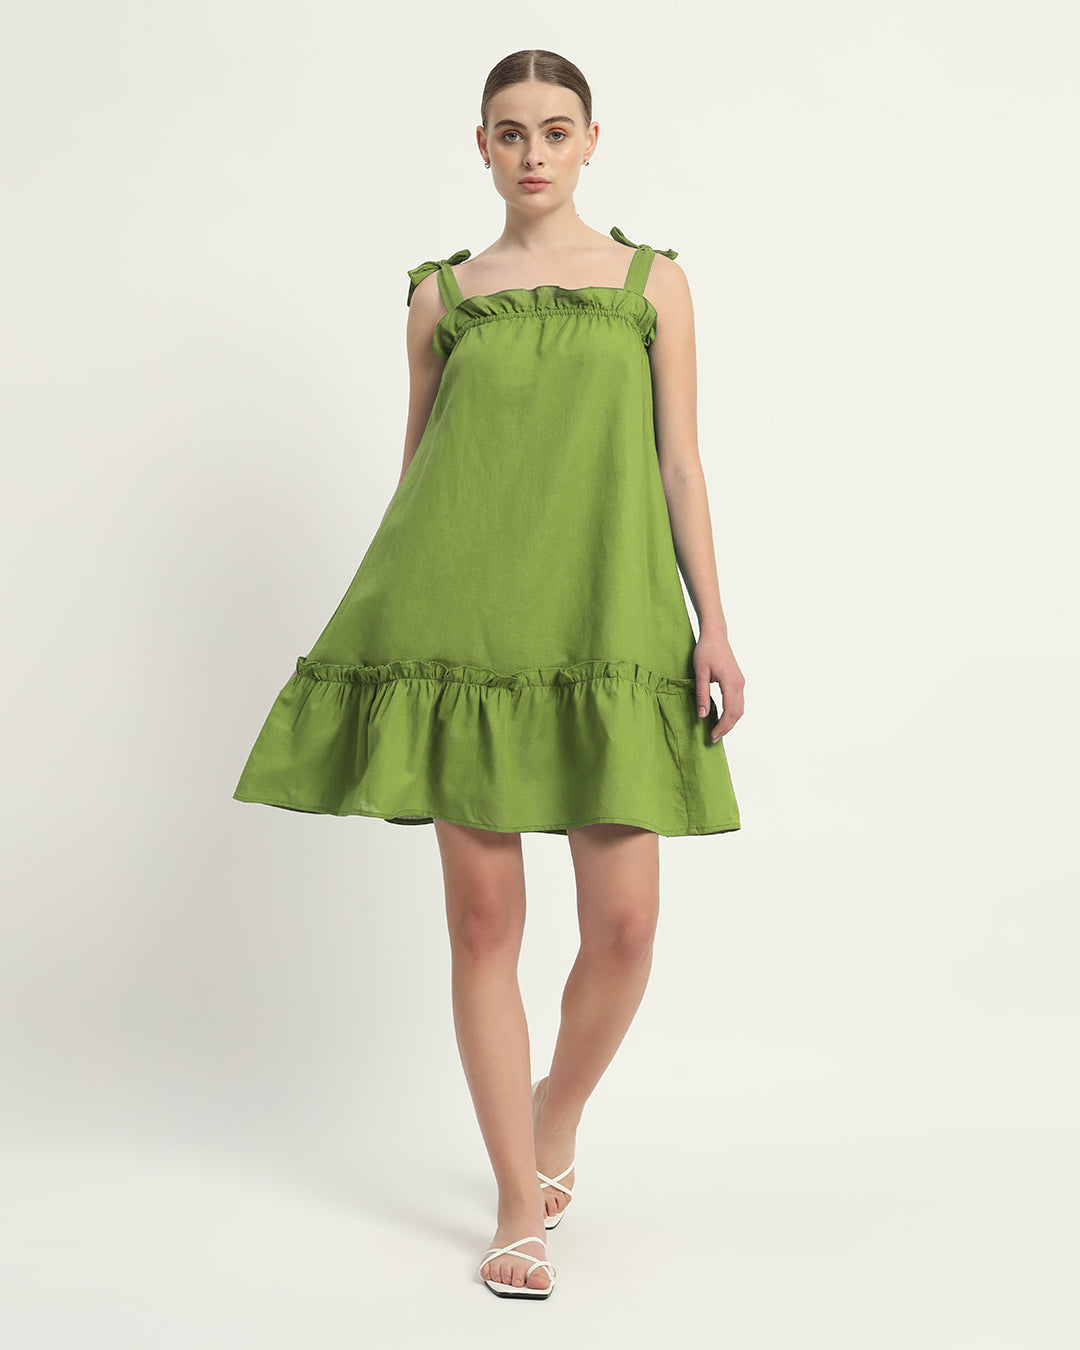 The Fern Amalfi Cotton Dress